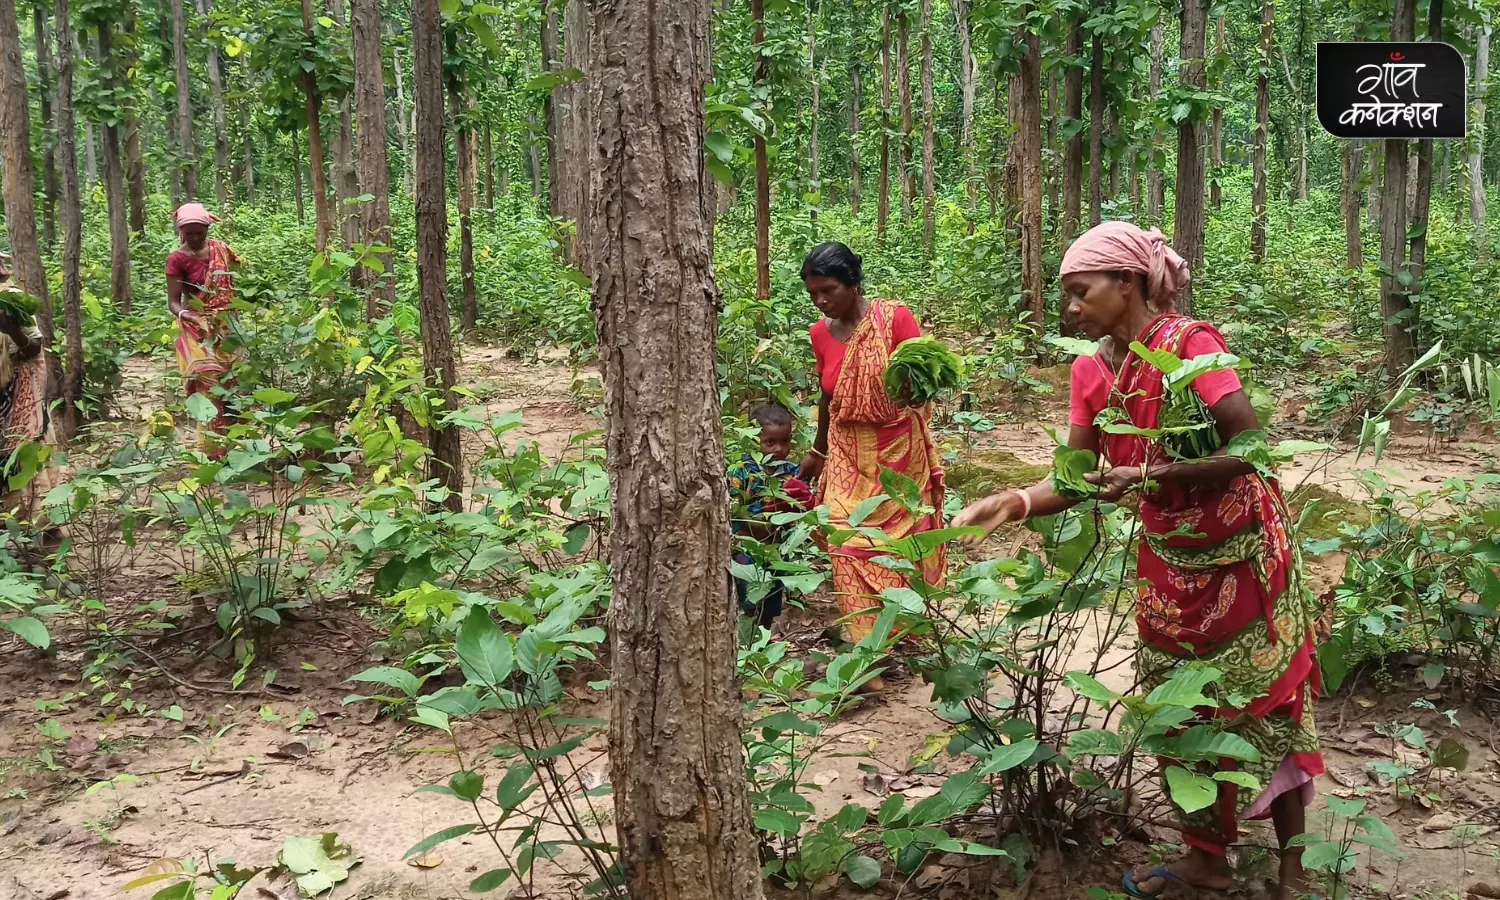 क्यों बड़ी बात है इन आदिवासी महिलाओं का साल के जंगलों से सुरक्षित लौट आना